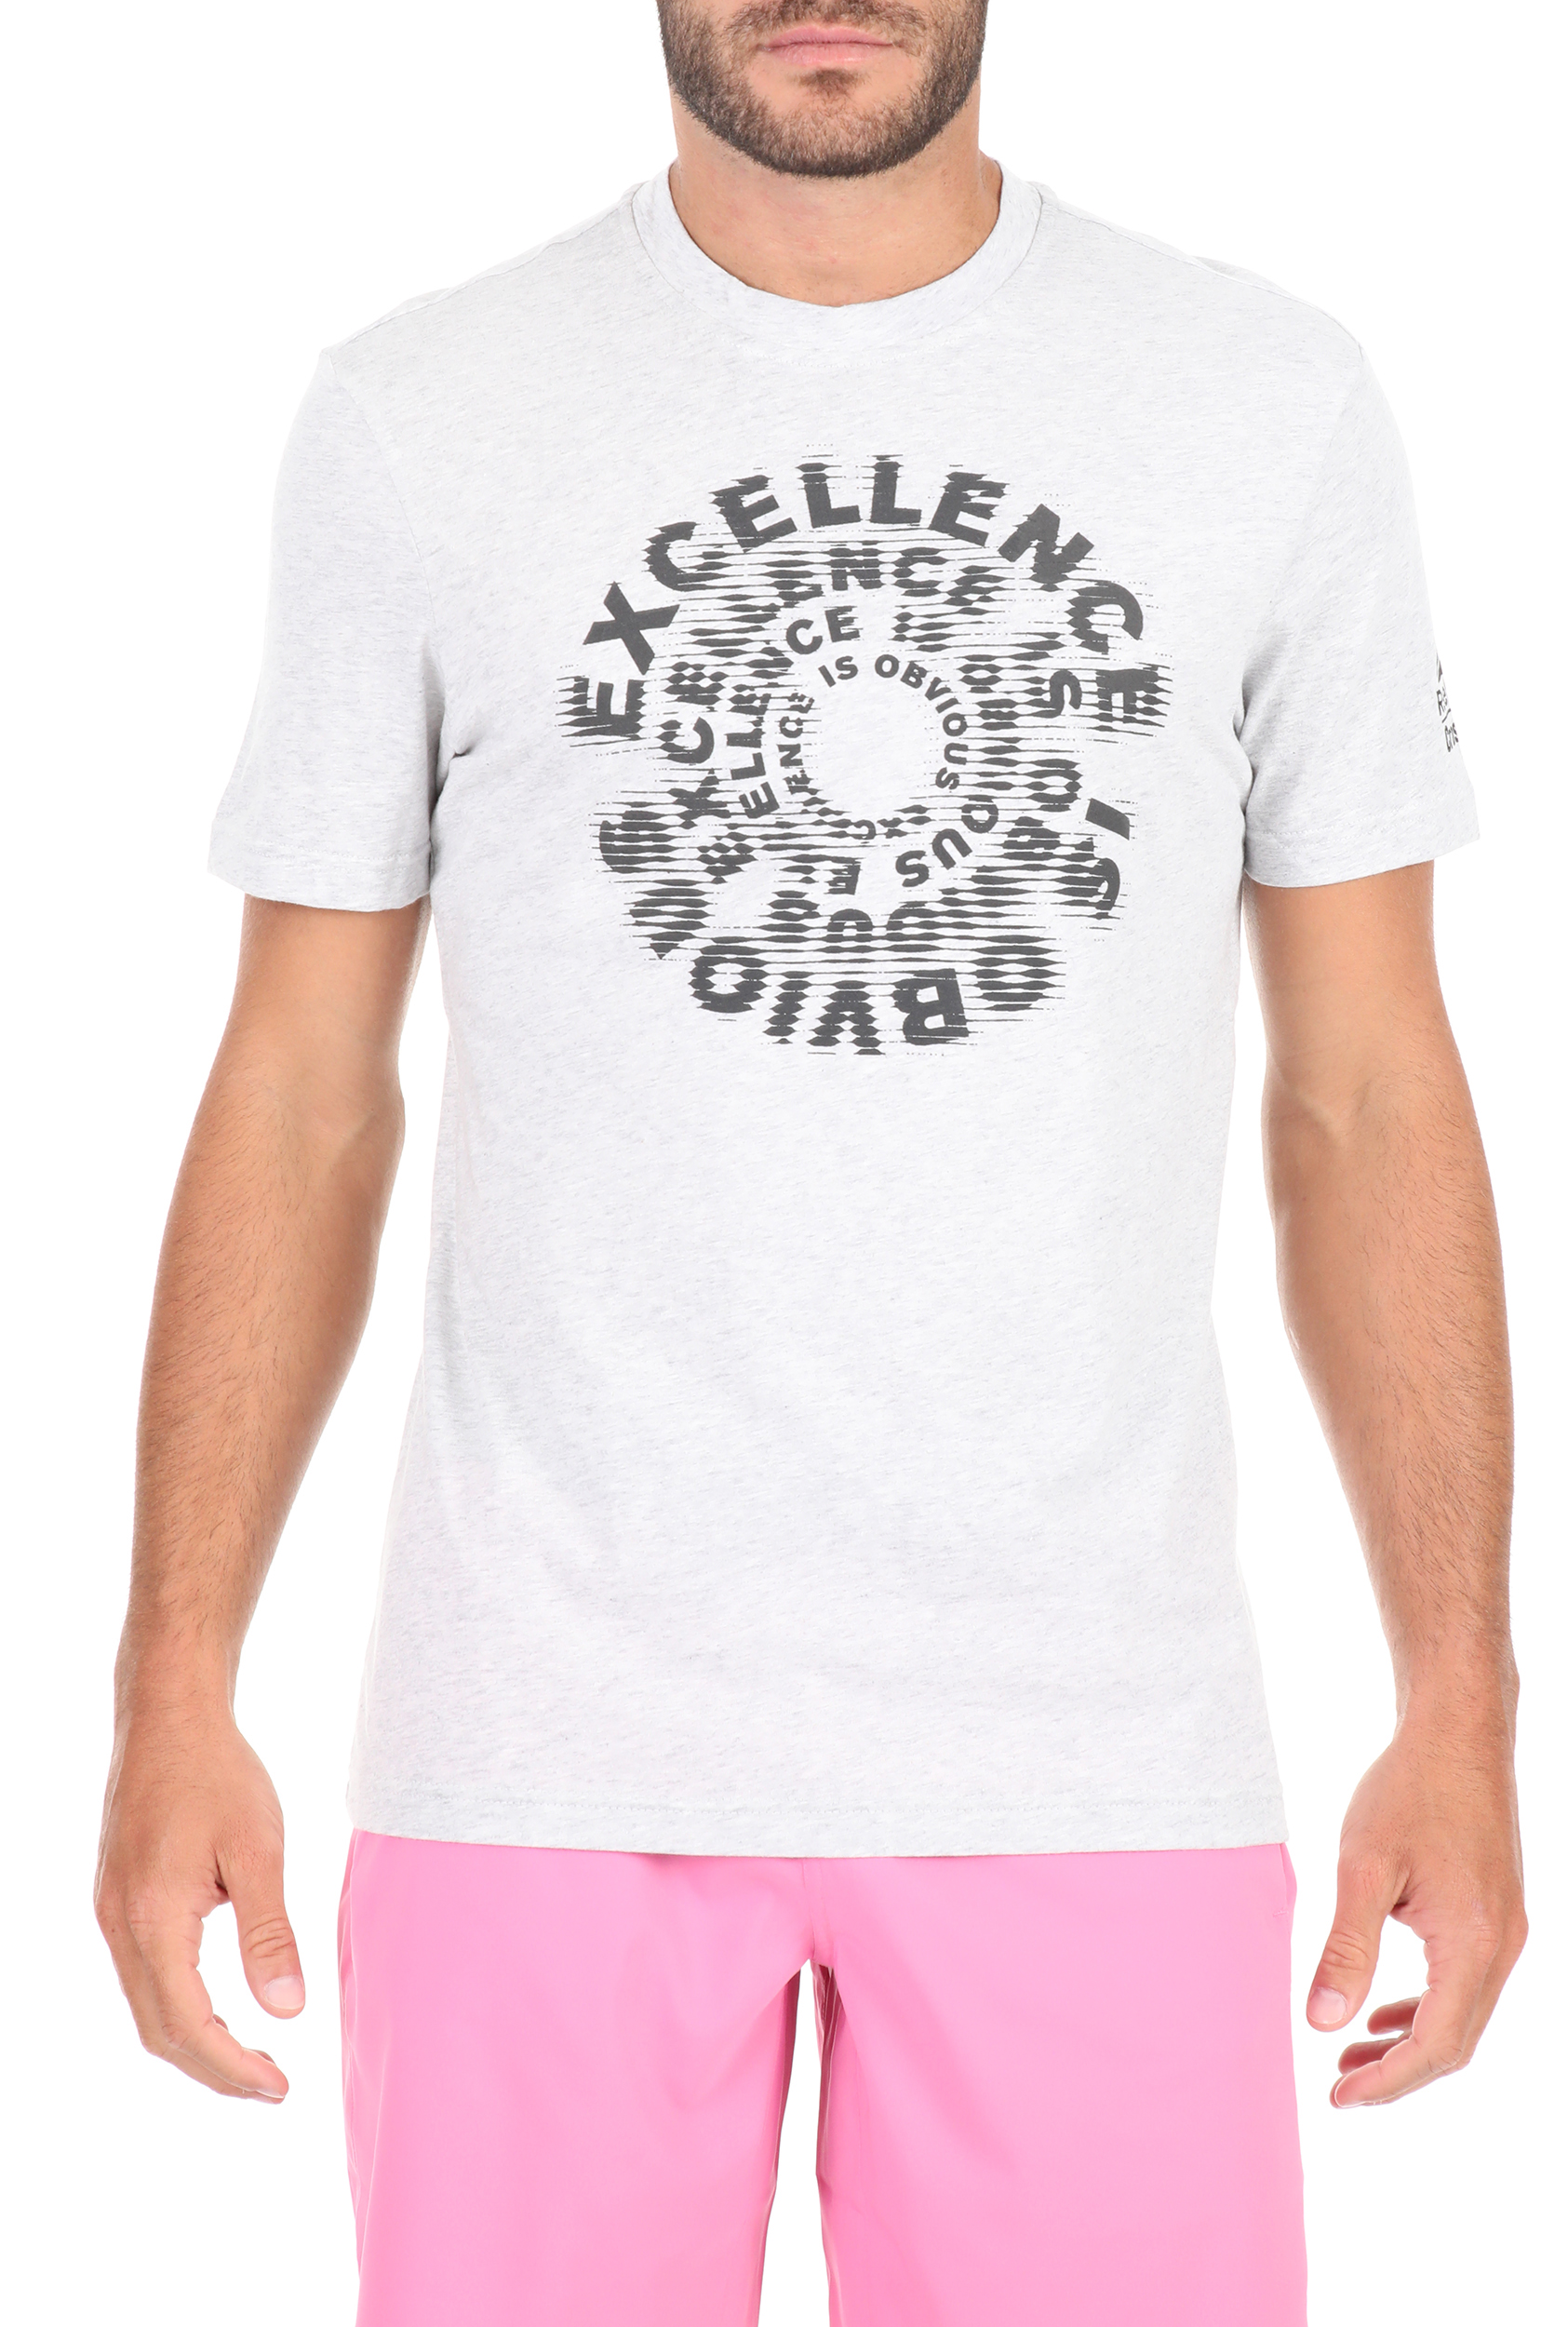 Ανδρικά/Ρούχα/Μπλούζες/Κοντομάνικες Reebok Classics - Ανδρικό αθλητικό t-shirt Reebok Classics Excellence is Obvious λευκό